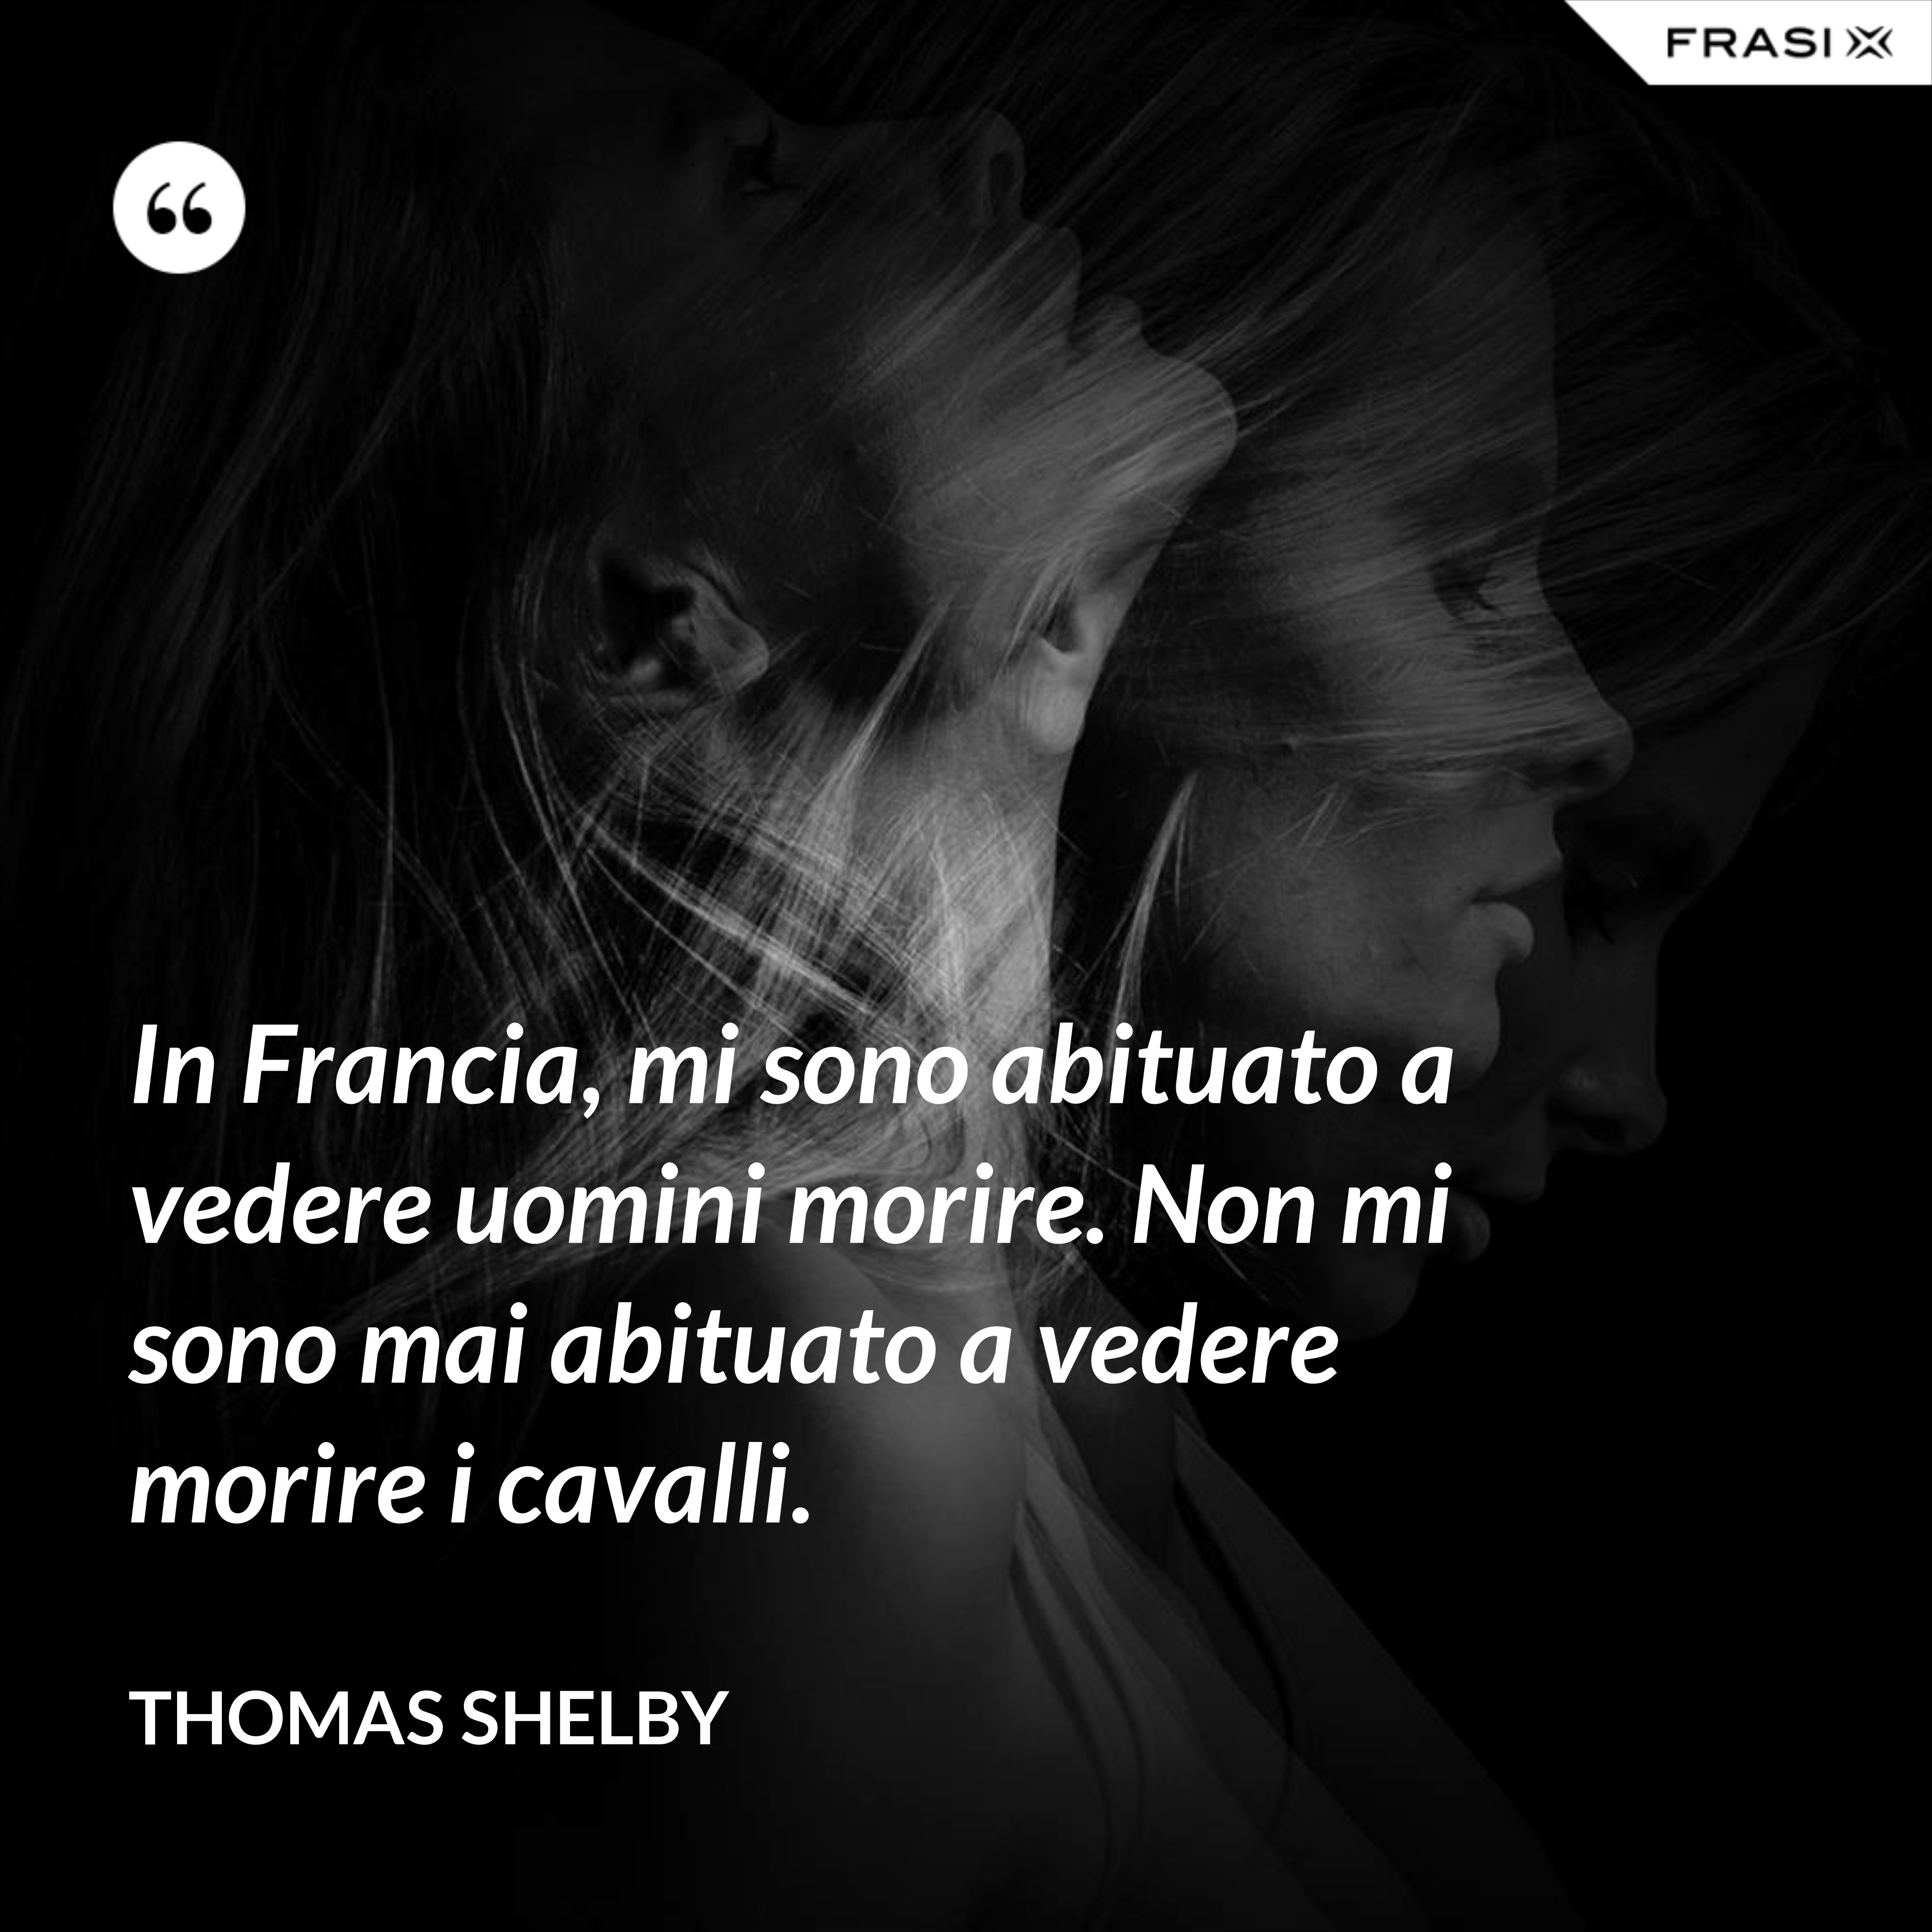 In Francia, mi sono abituato a vedere uomini morire. Non mi sono mai abituato a vedere morire i cavalli. - Thomas Shelby